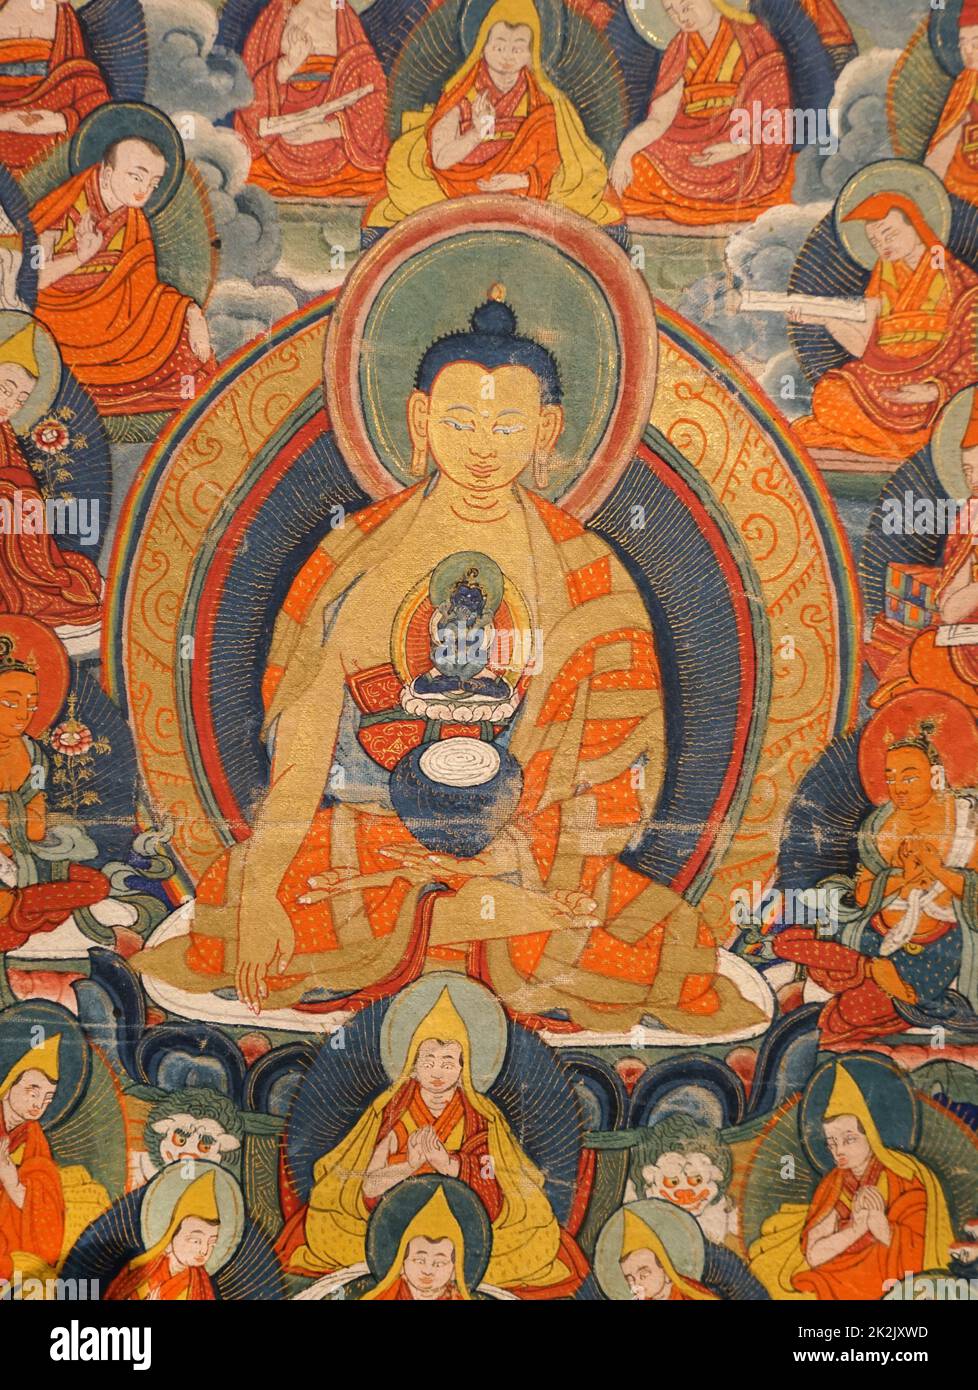 Buddista Tibetana Thanka raffigurante la divinità e i Lama dell'ordine Geluk. Dipinto di seta e cotone, inizio del ventesimo secolo. Un thangka, (tangka, thanka o Tanka) è un buddista tibetano dipinto su cotone o seta appliqué, solitamente raffigurante una divinità buddista, scena o mandala Foto Stock